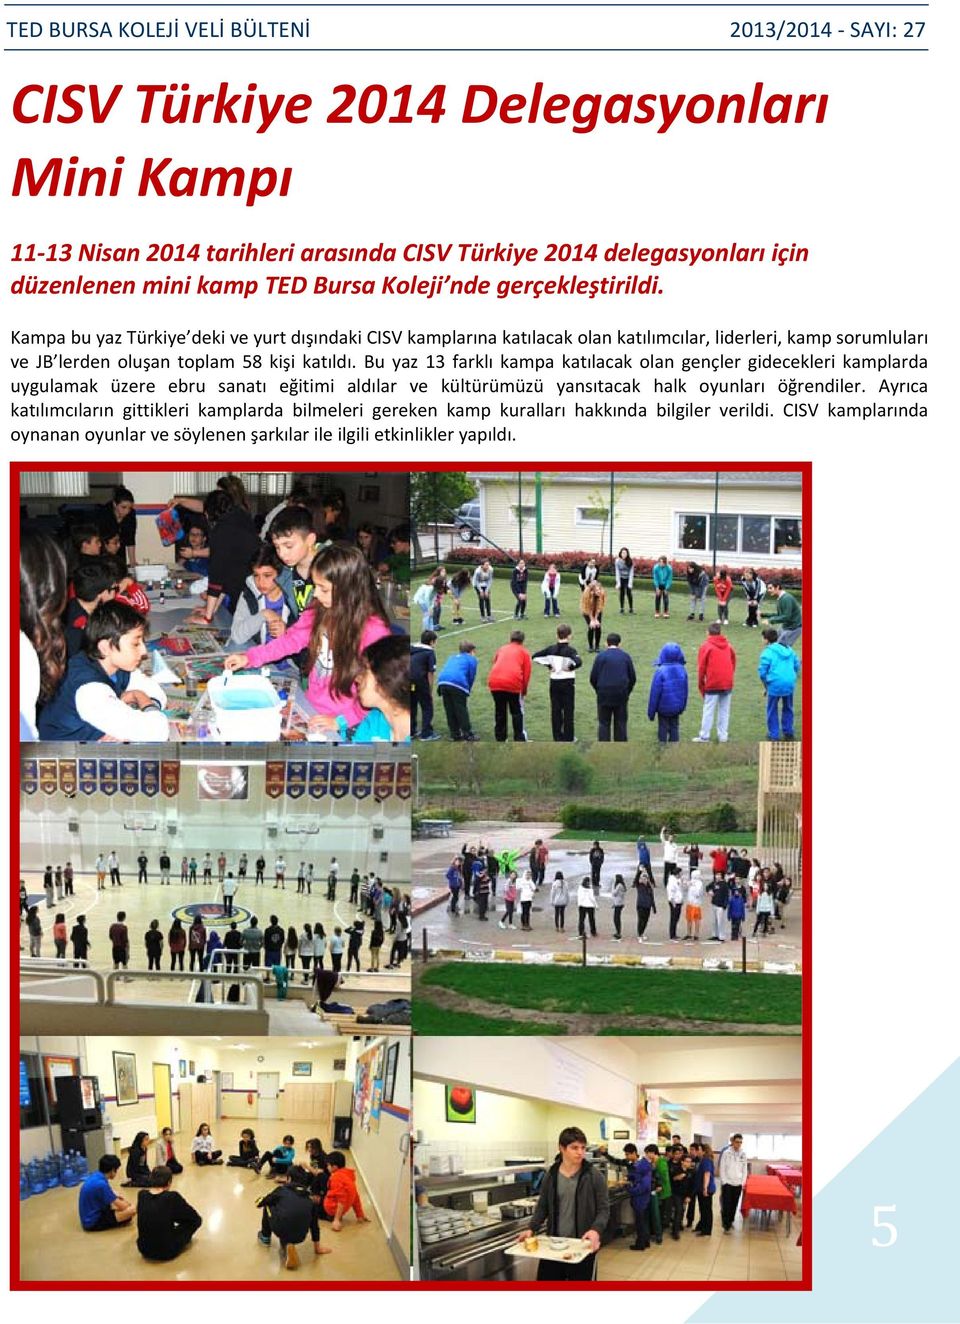 Kampa bu yaz Türkiye deki ve yurt dışındaki CISV kamplarına katılacak olan katılımcılar, liderleri, kamp sorumluları ve JB lerden oluşan toplam 58 kişi katıldı.